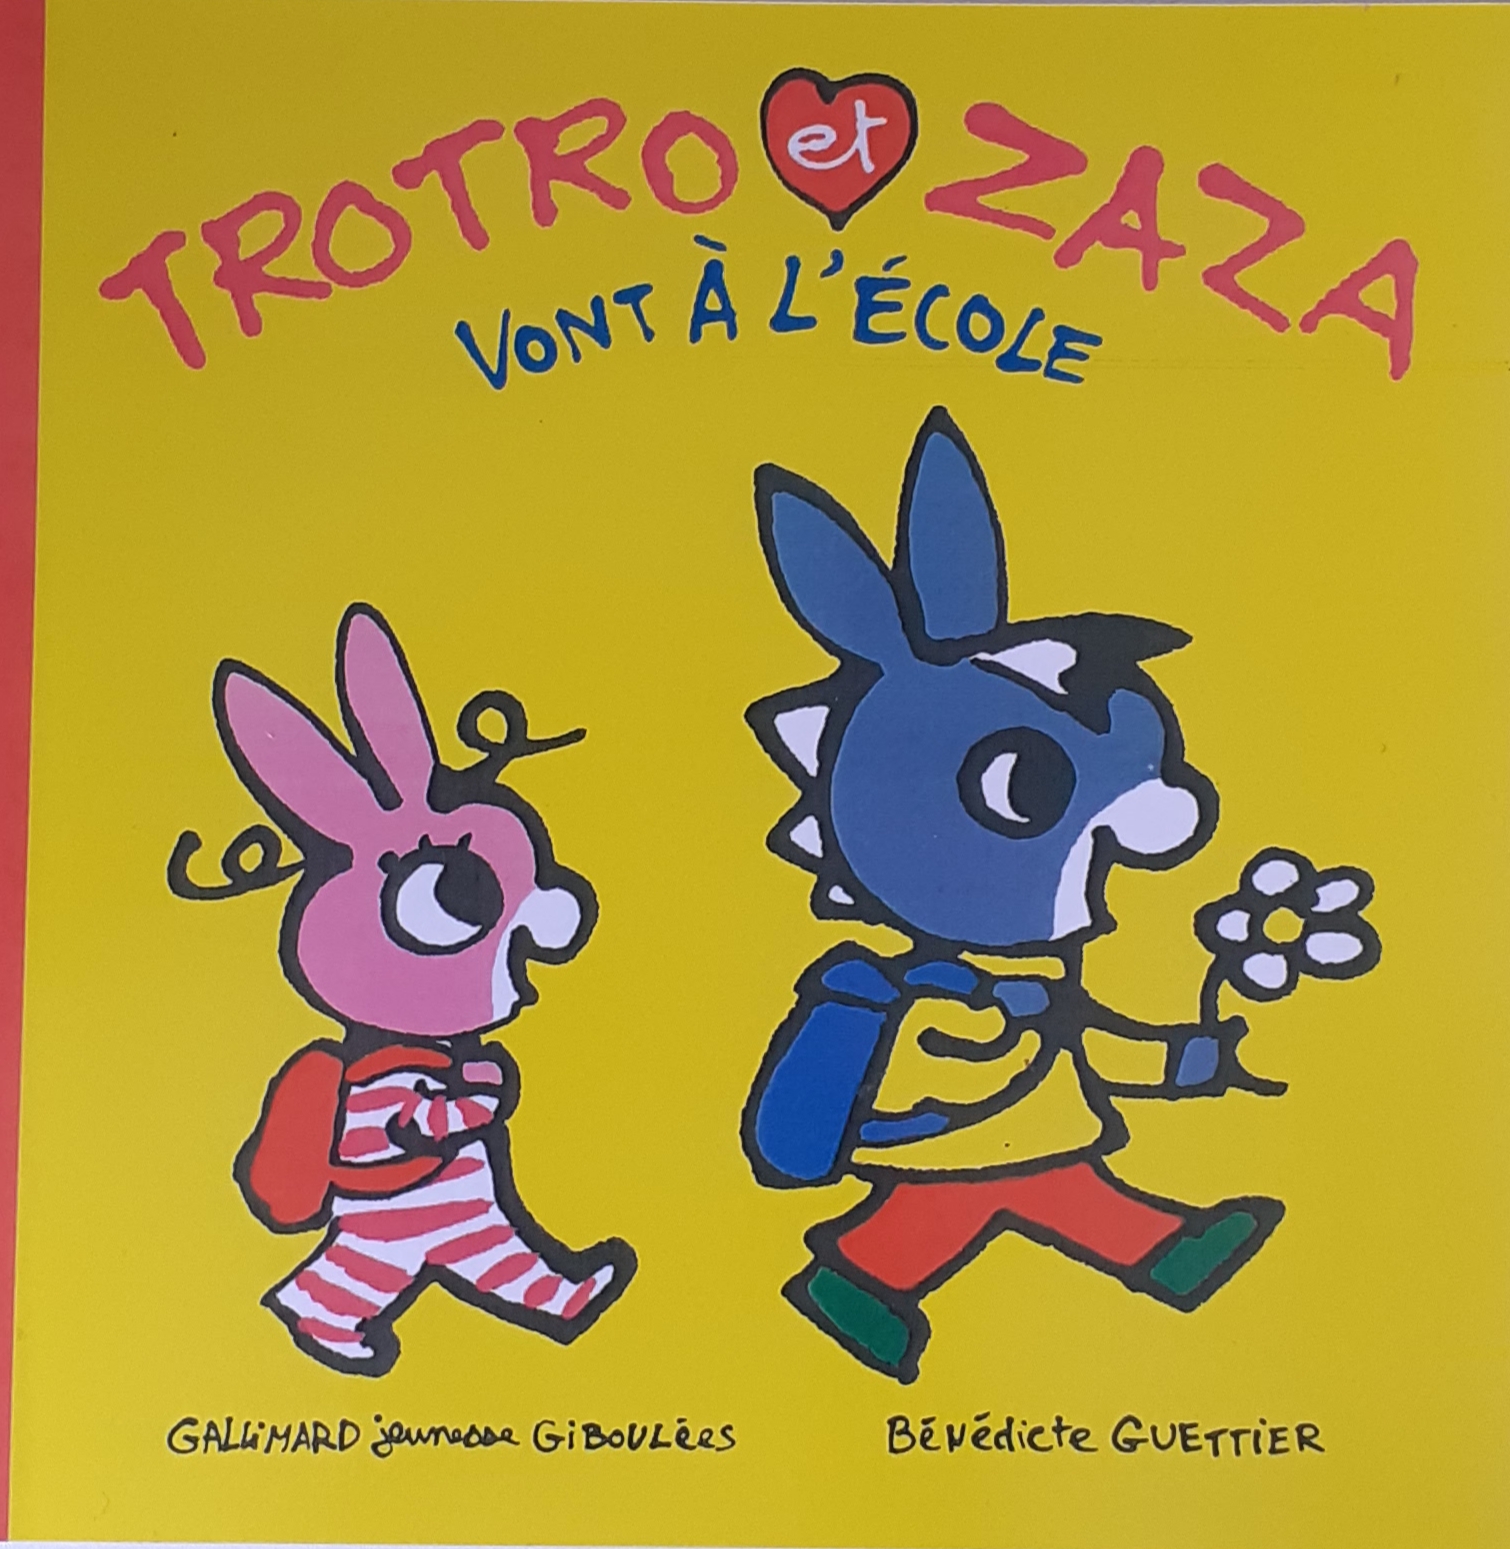 کتاب داستان فرانسه به مدرسه TROTRO et ZAZA بروید